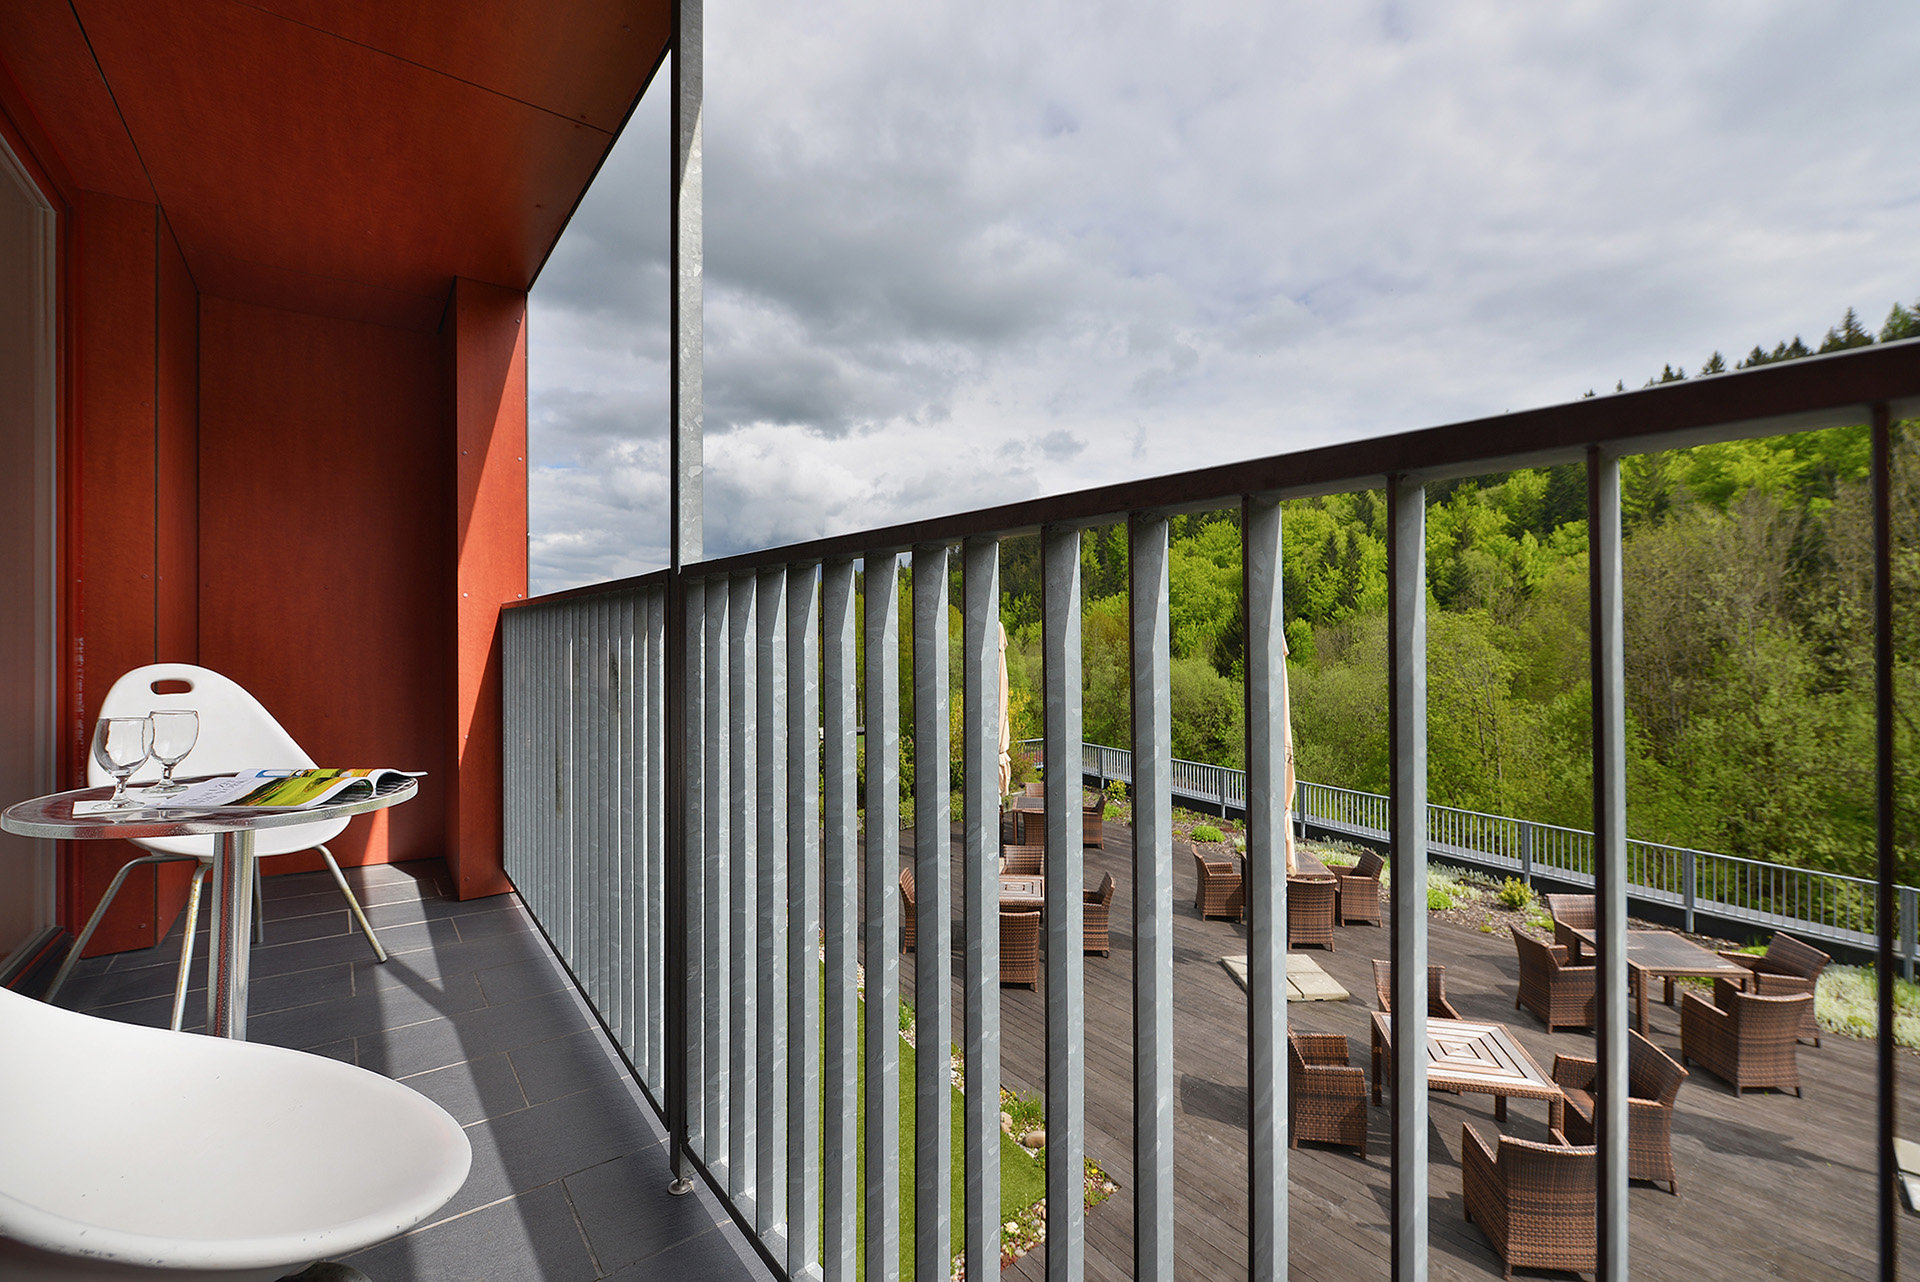 Omnia Hotel Relax & Wellness - Superior Suite s Terrasse und einer Sprudelwanne 4